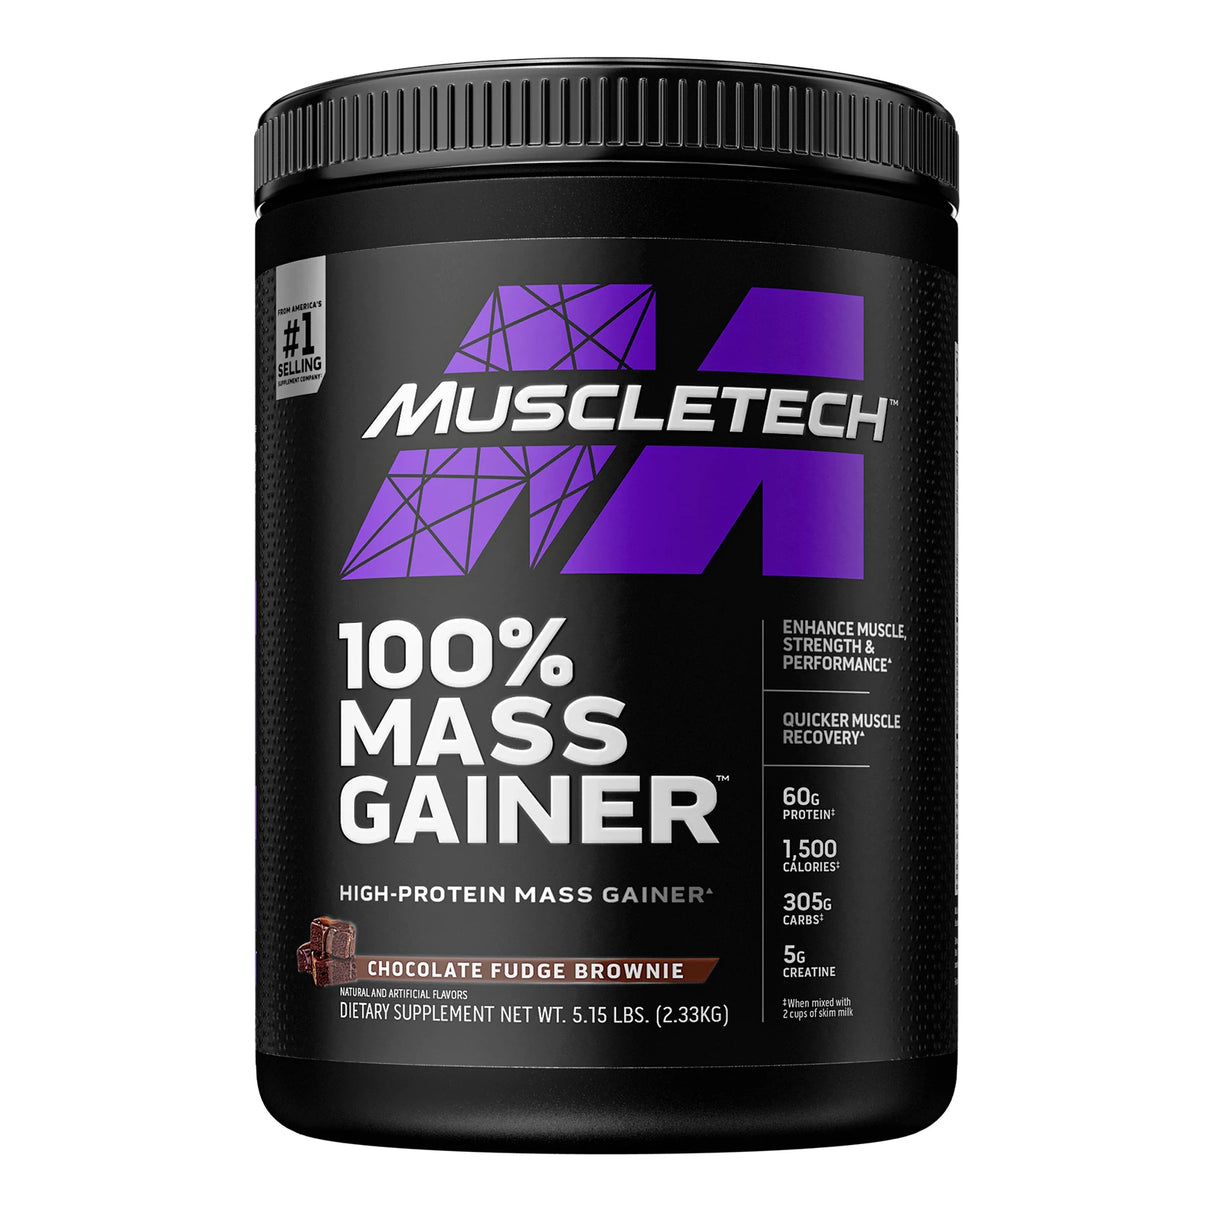 100% MASS GAINER - 2330G MuscleTech